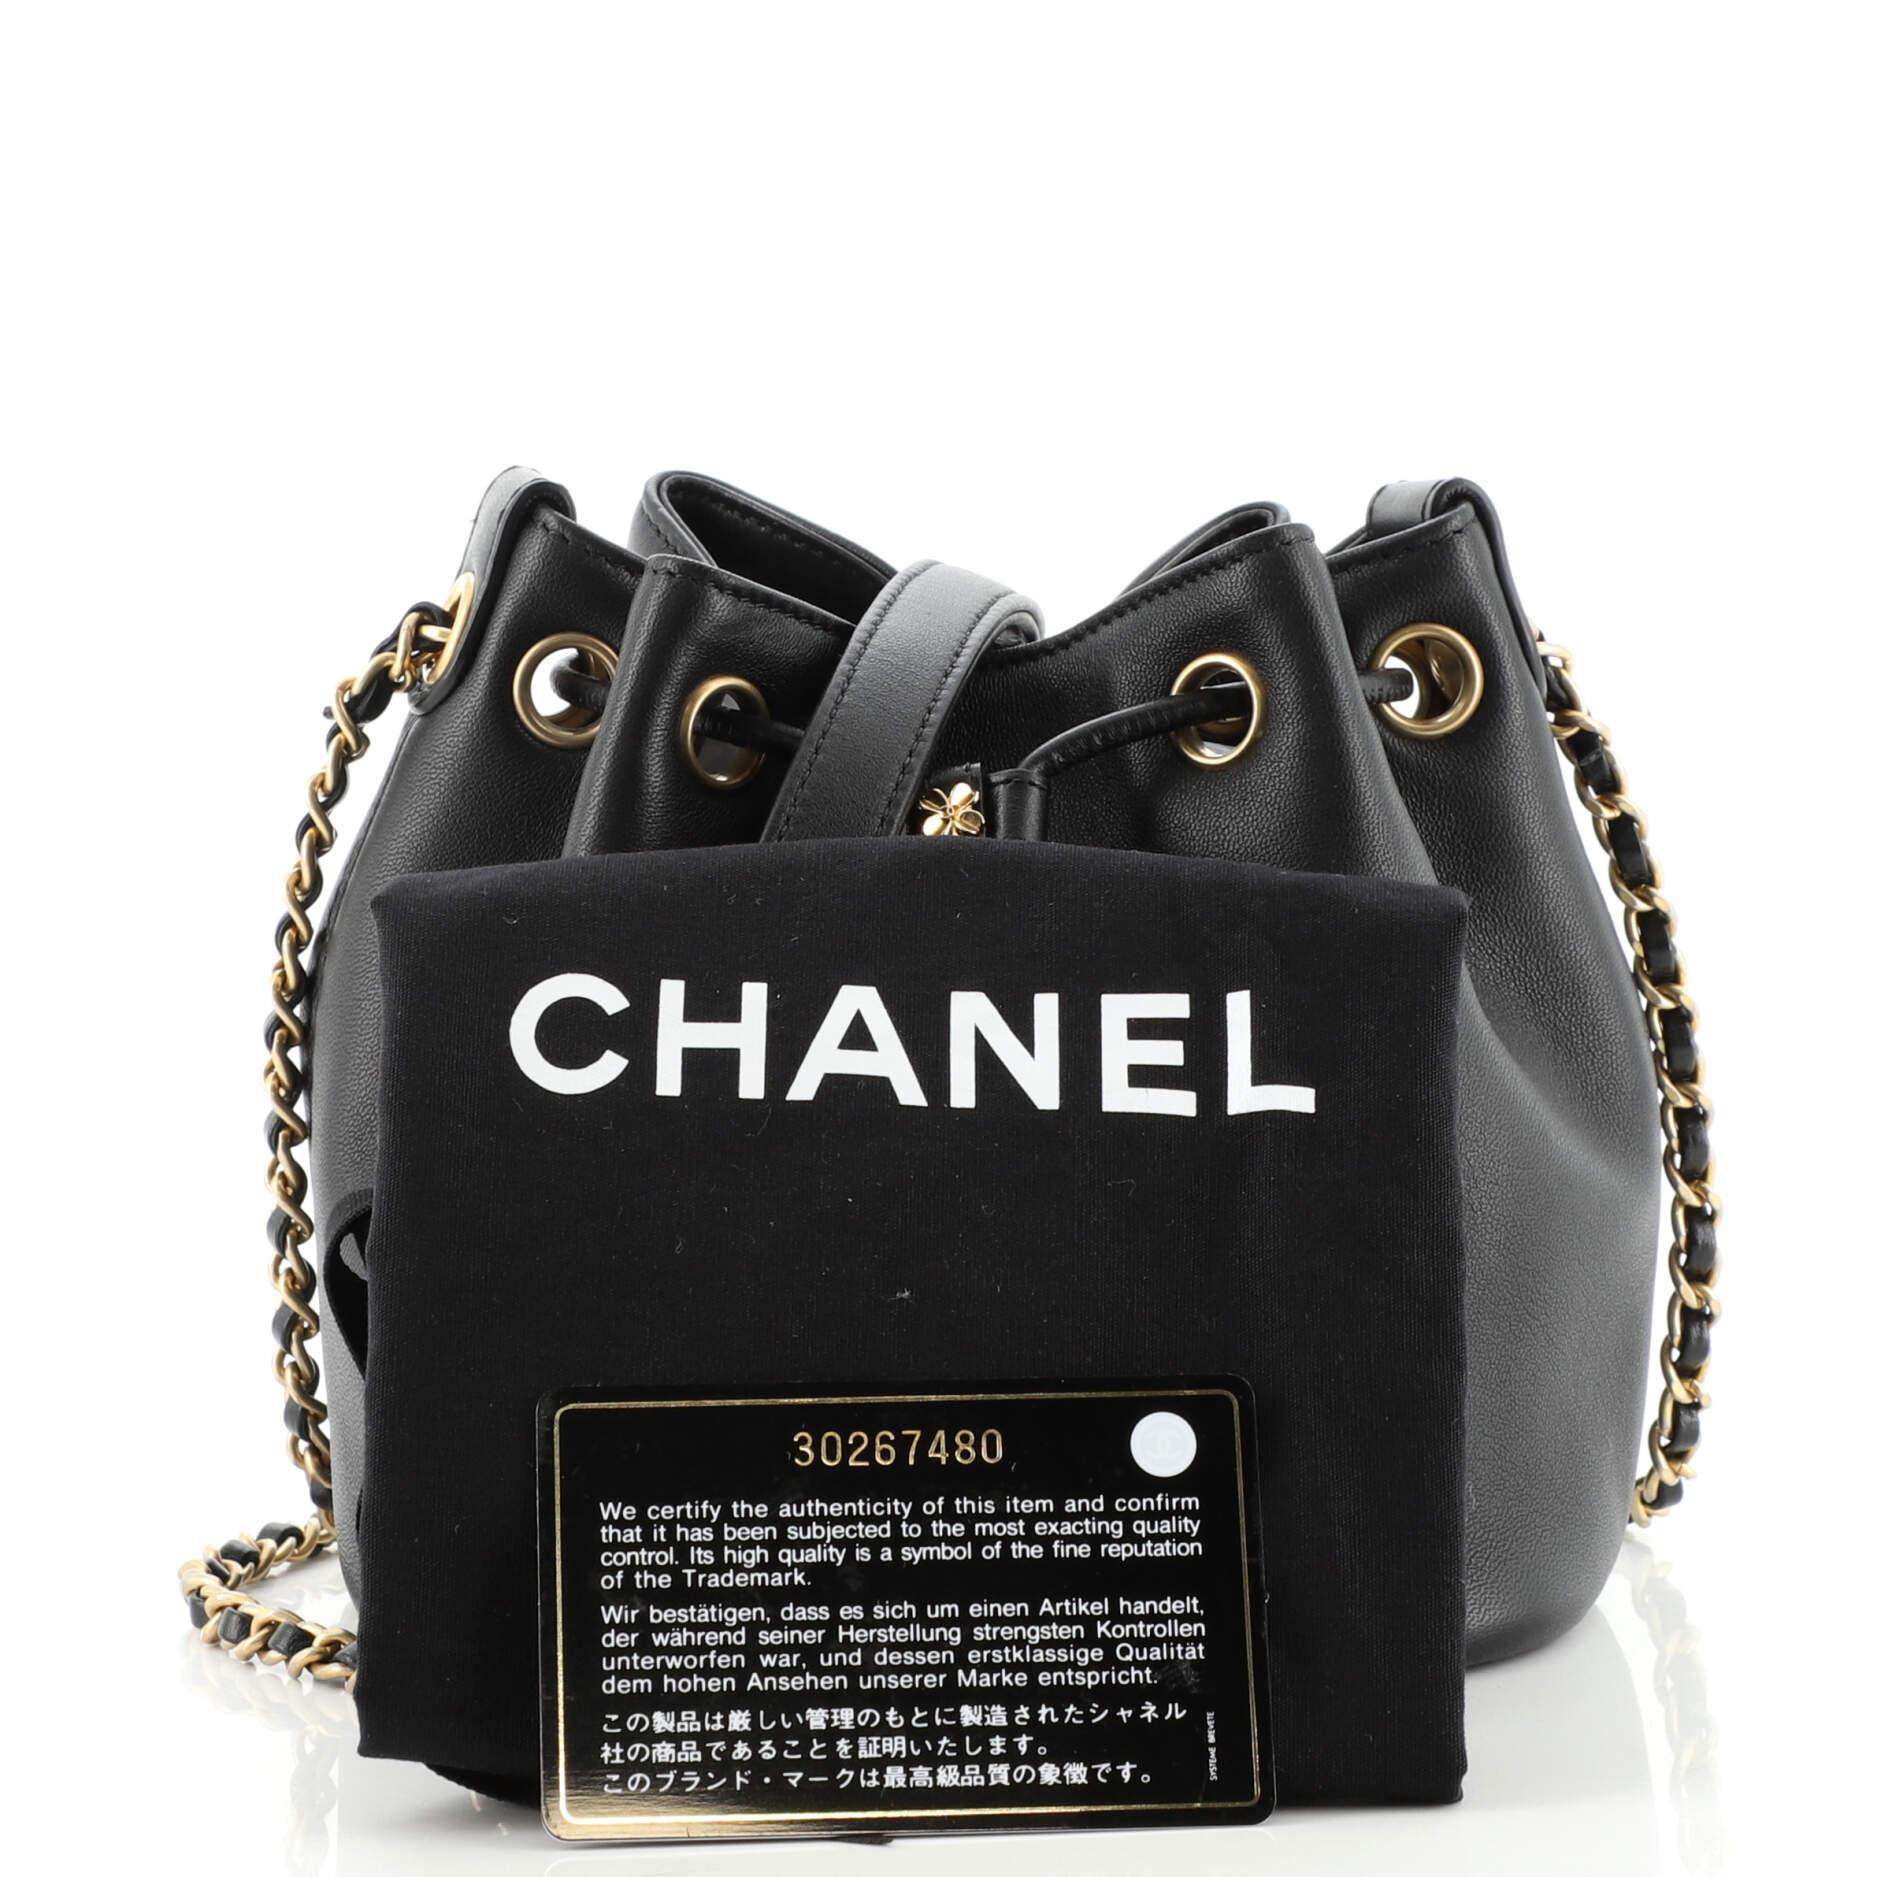 Chanel Mini Lucky Charm - For Sale on 1stDibs  chanel lucky charm bag  2019, lucky charm purse, chanel lucky charms bag